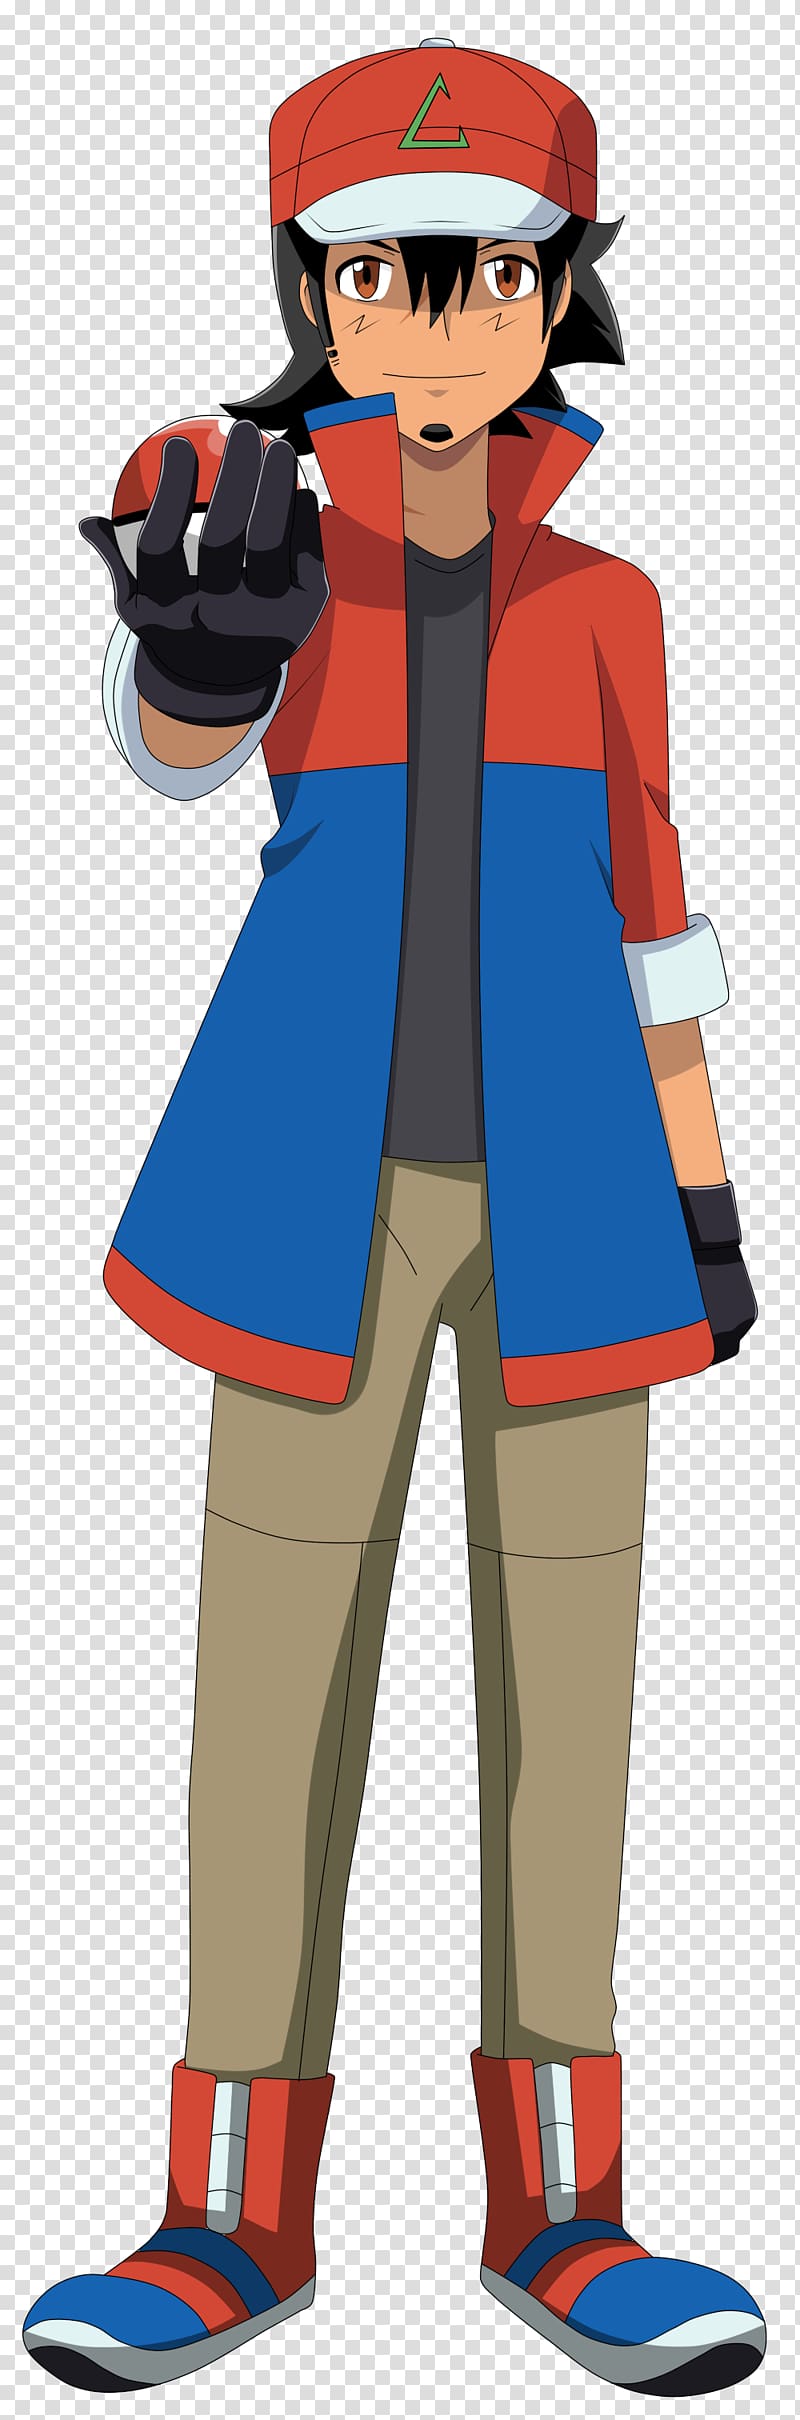 Clemont Kalos Pokémon Kavaii, Ash Ketchum transparent background PNG clipart